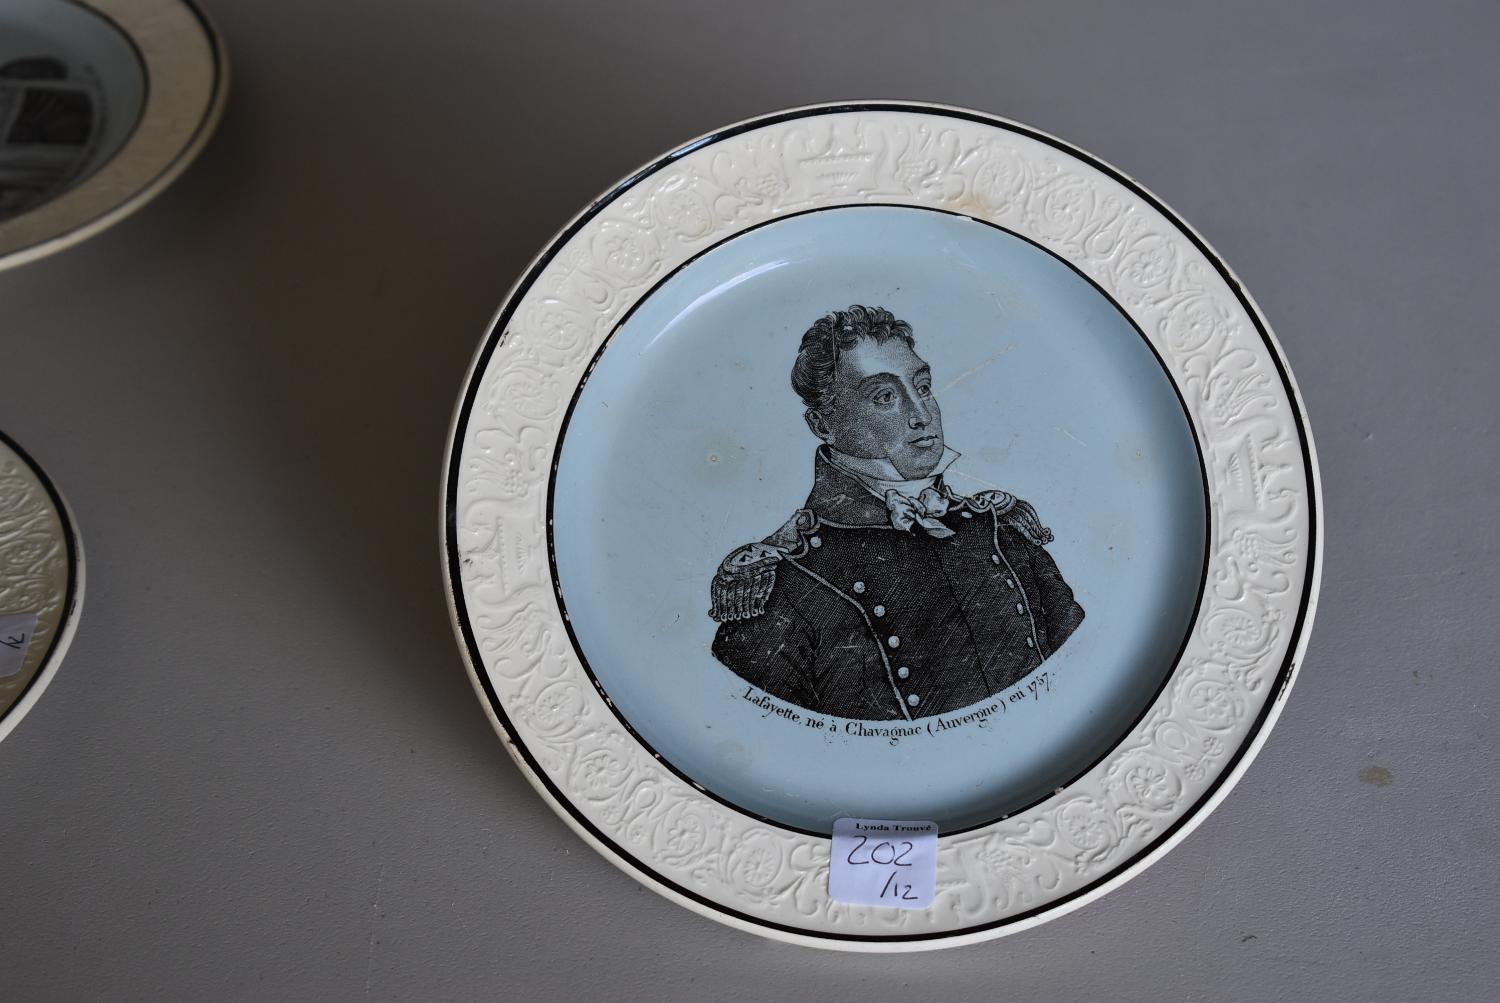 Assiette représentant la famille d'Orléans et le général Lafayette : portrait du général Lafayette